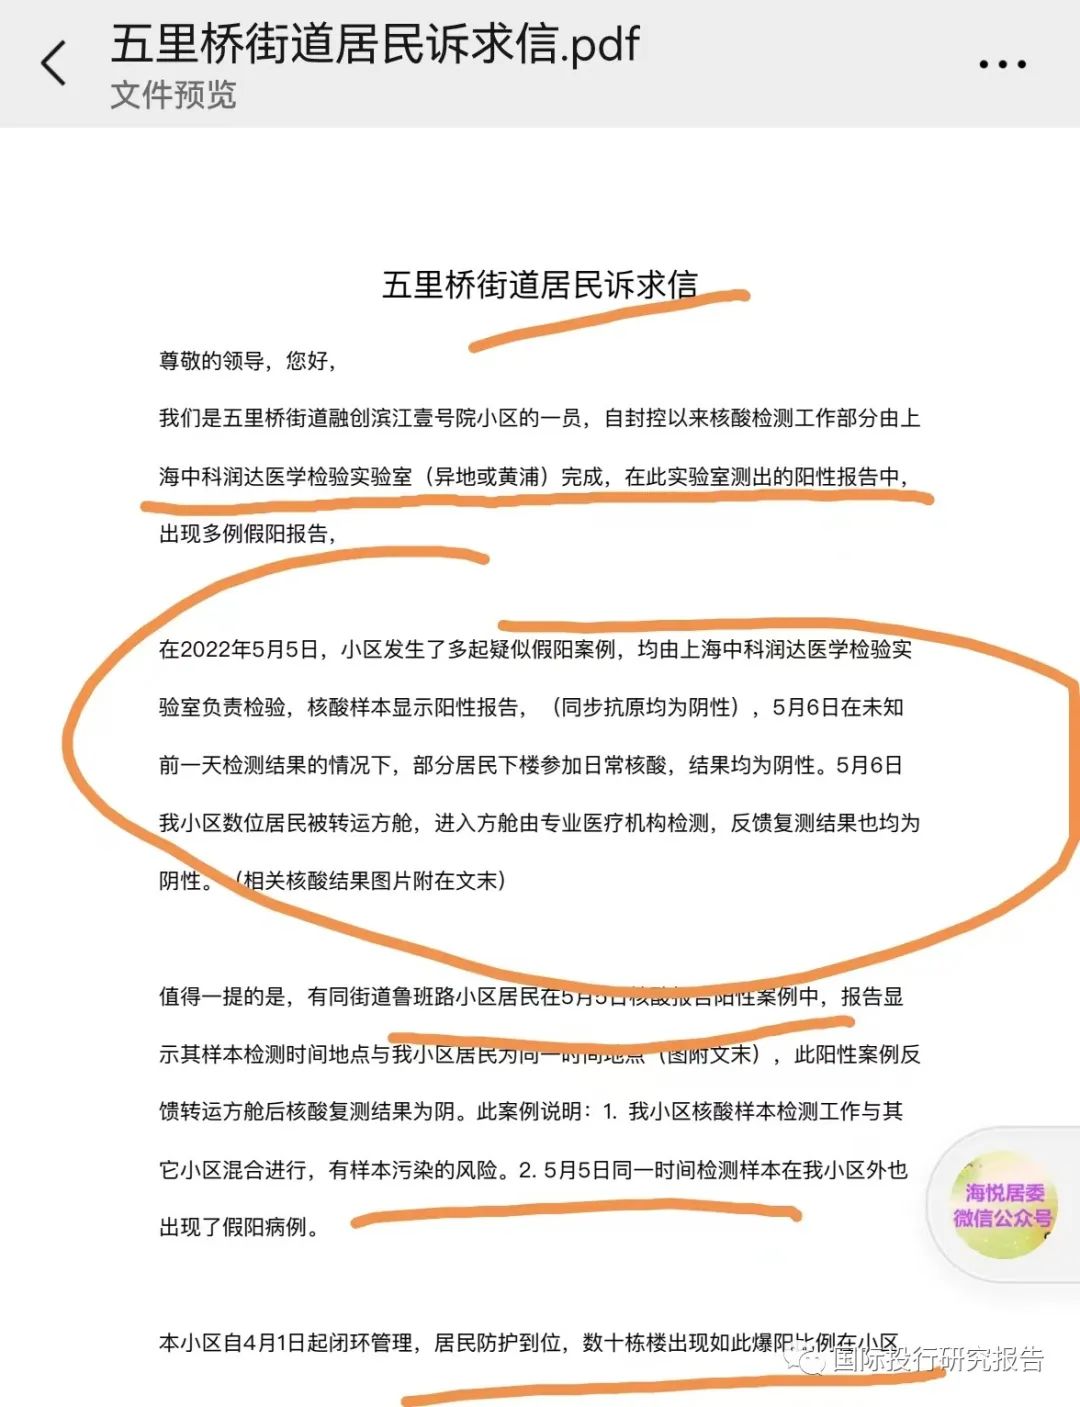 上海豪宅区核酸惊雷：润达医疗（603108.SH）核酸检测多次“误报”阳性多人被拉去方舱  居委会决定立即替换